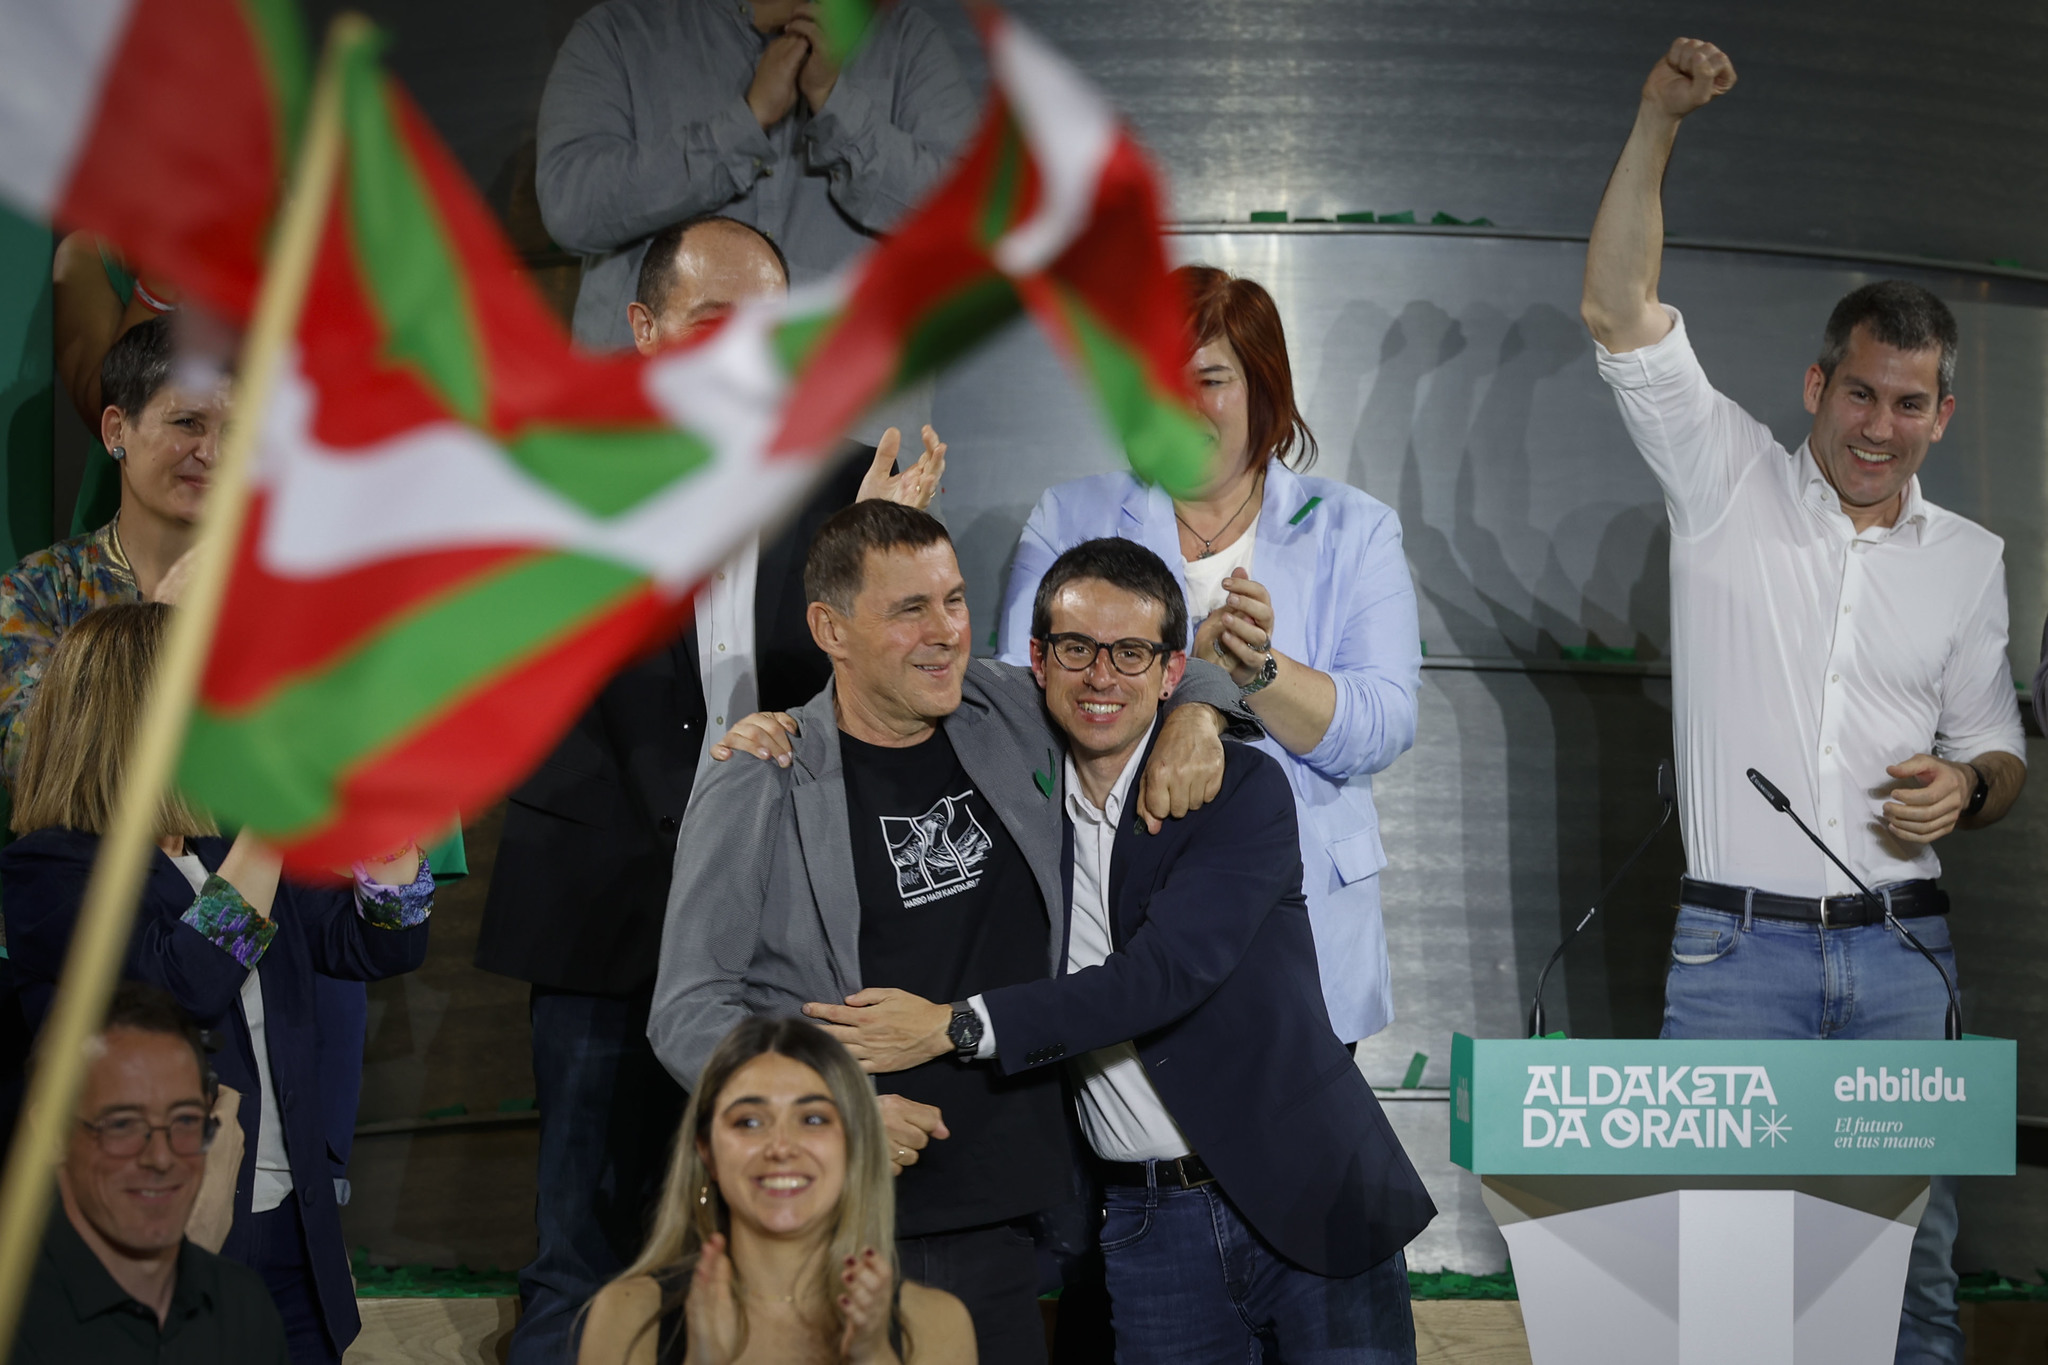 El candidato de Bildu, Pello Otxandiano, y Arnaldo Otegi celebran el resultado en las elecciones vascas el domingo por la noche.